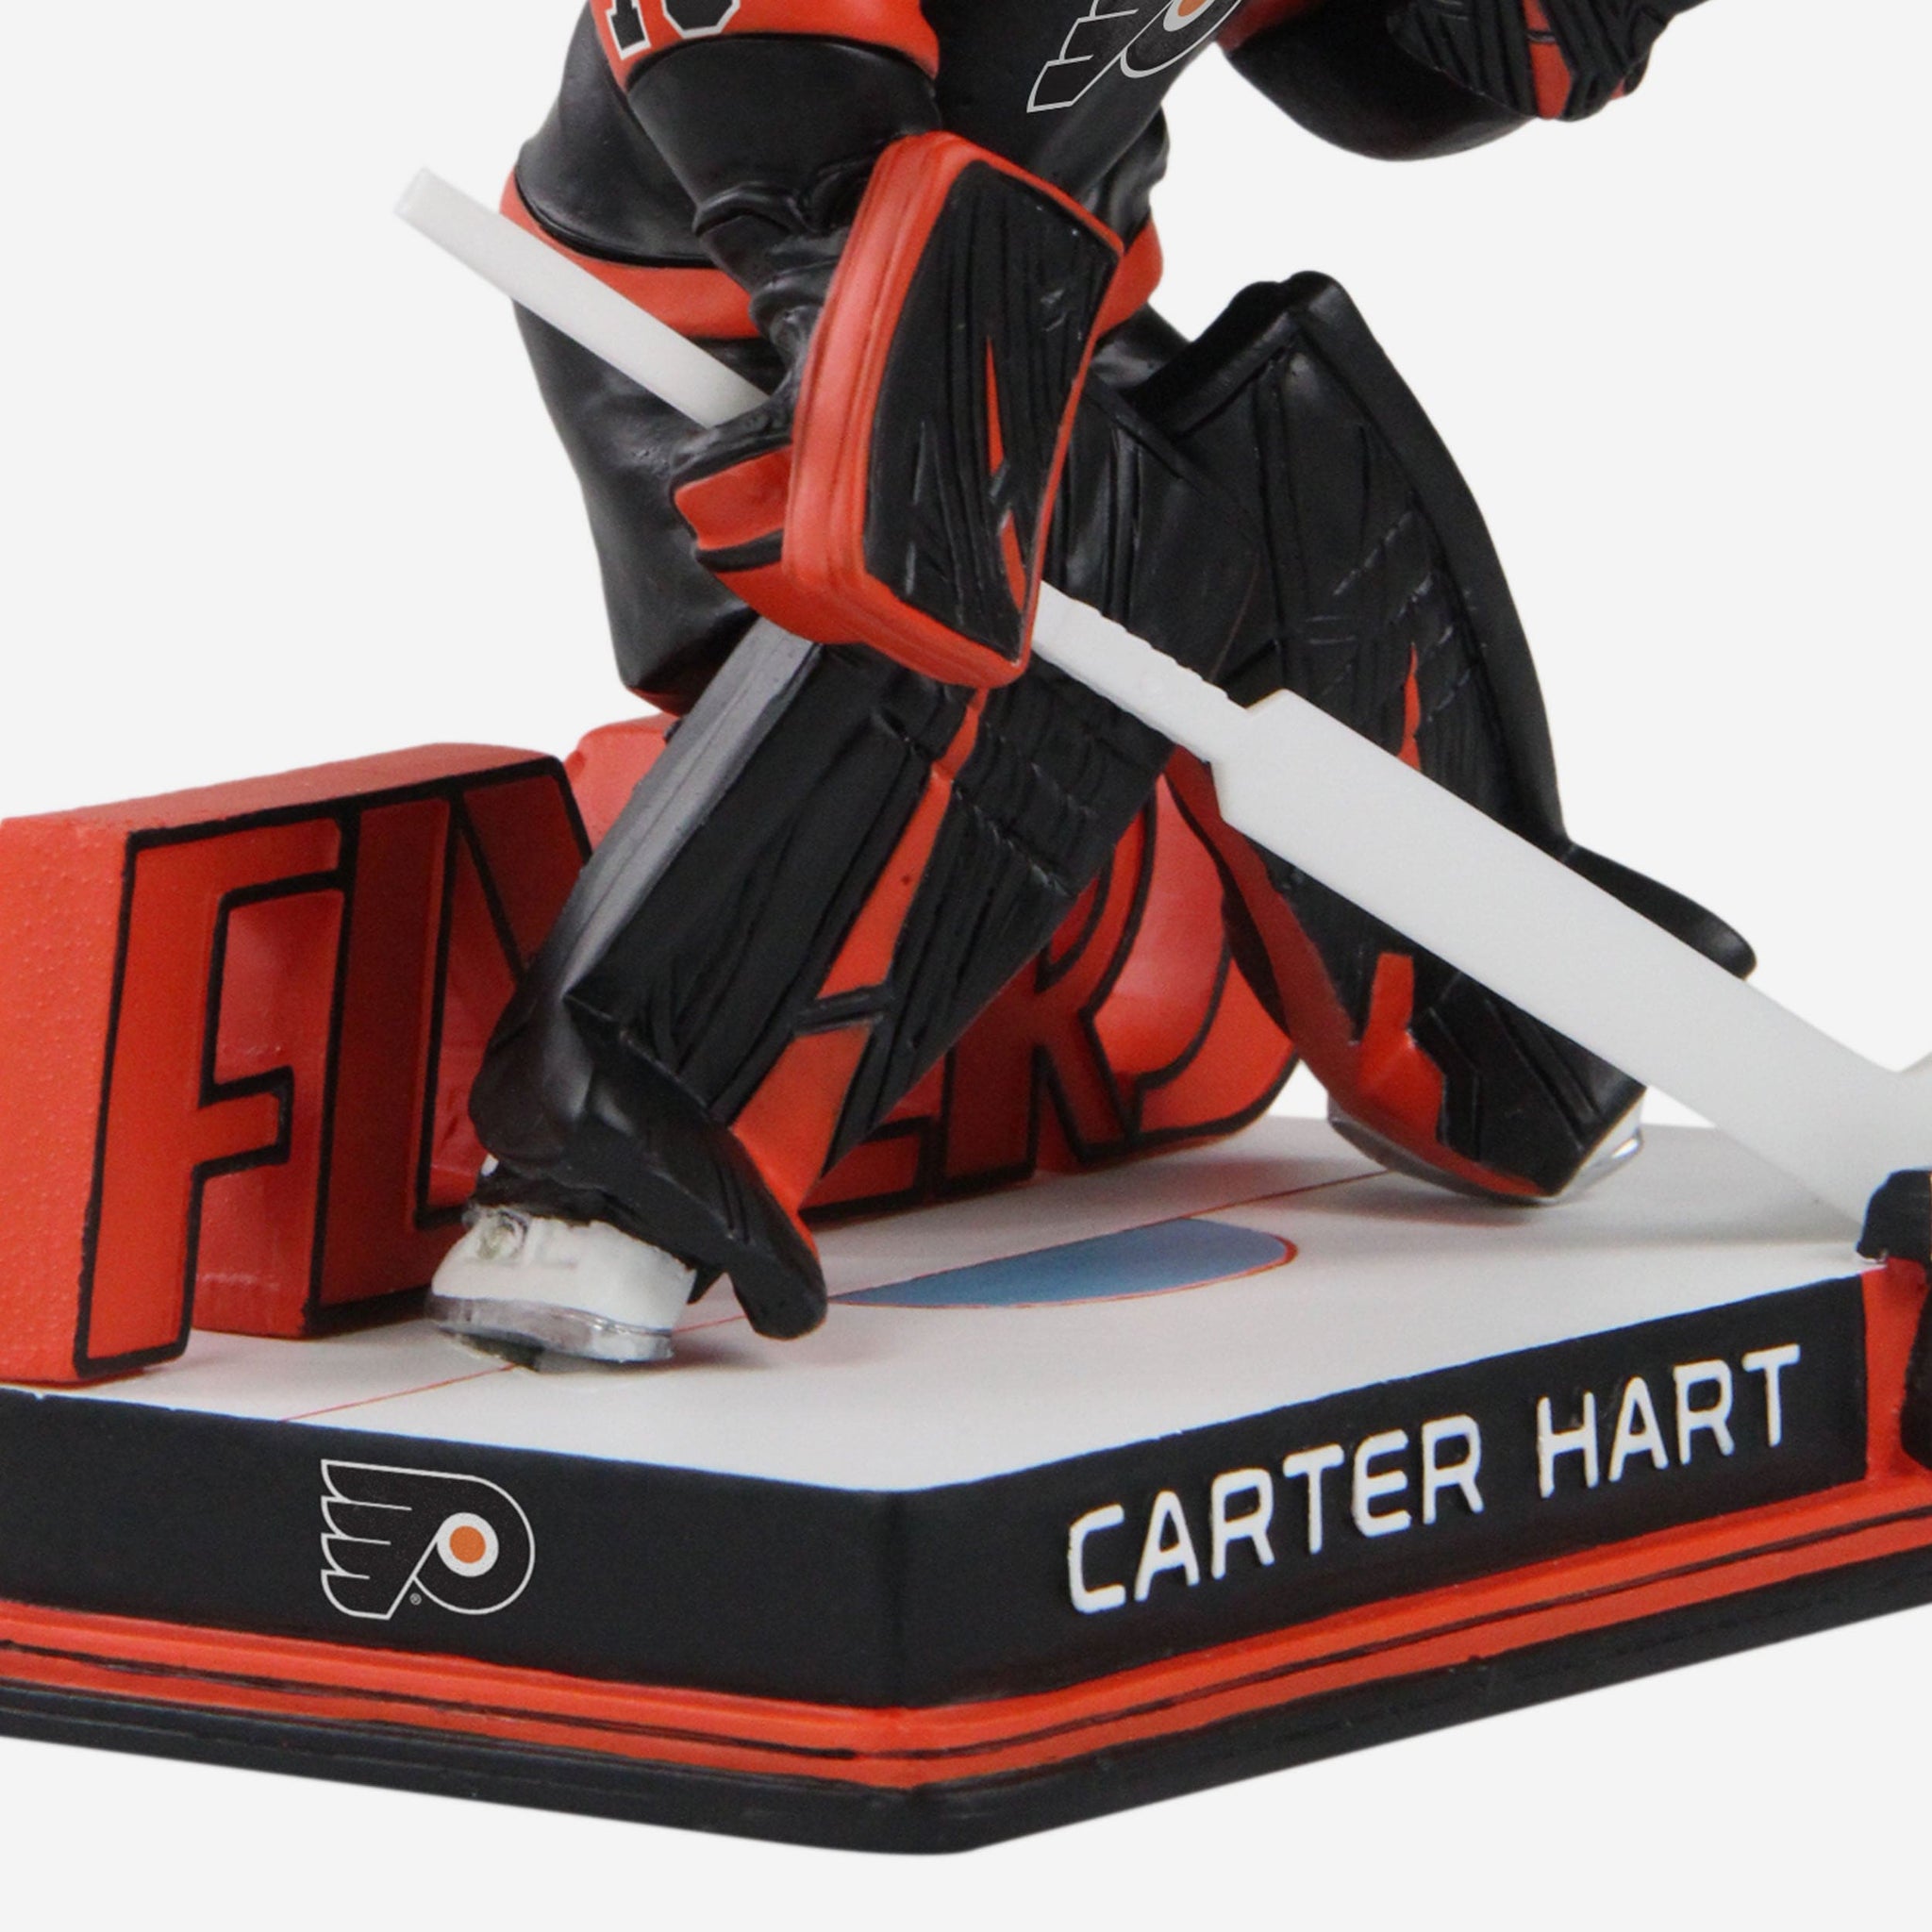 Carter Hart Jerseys, Carter Hart Shirts, Apparel, Gear